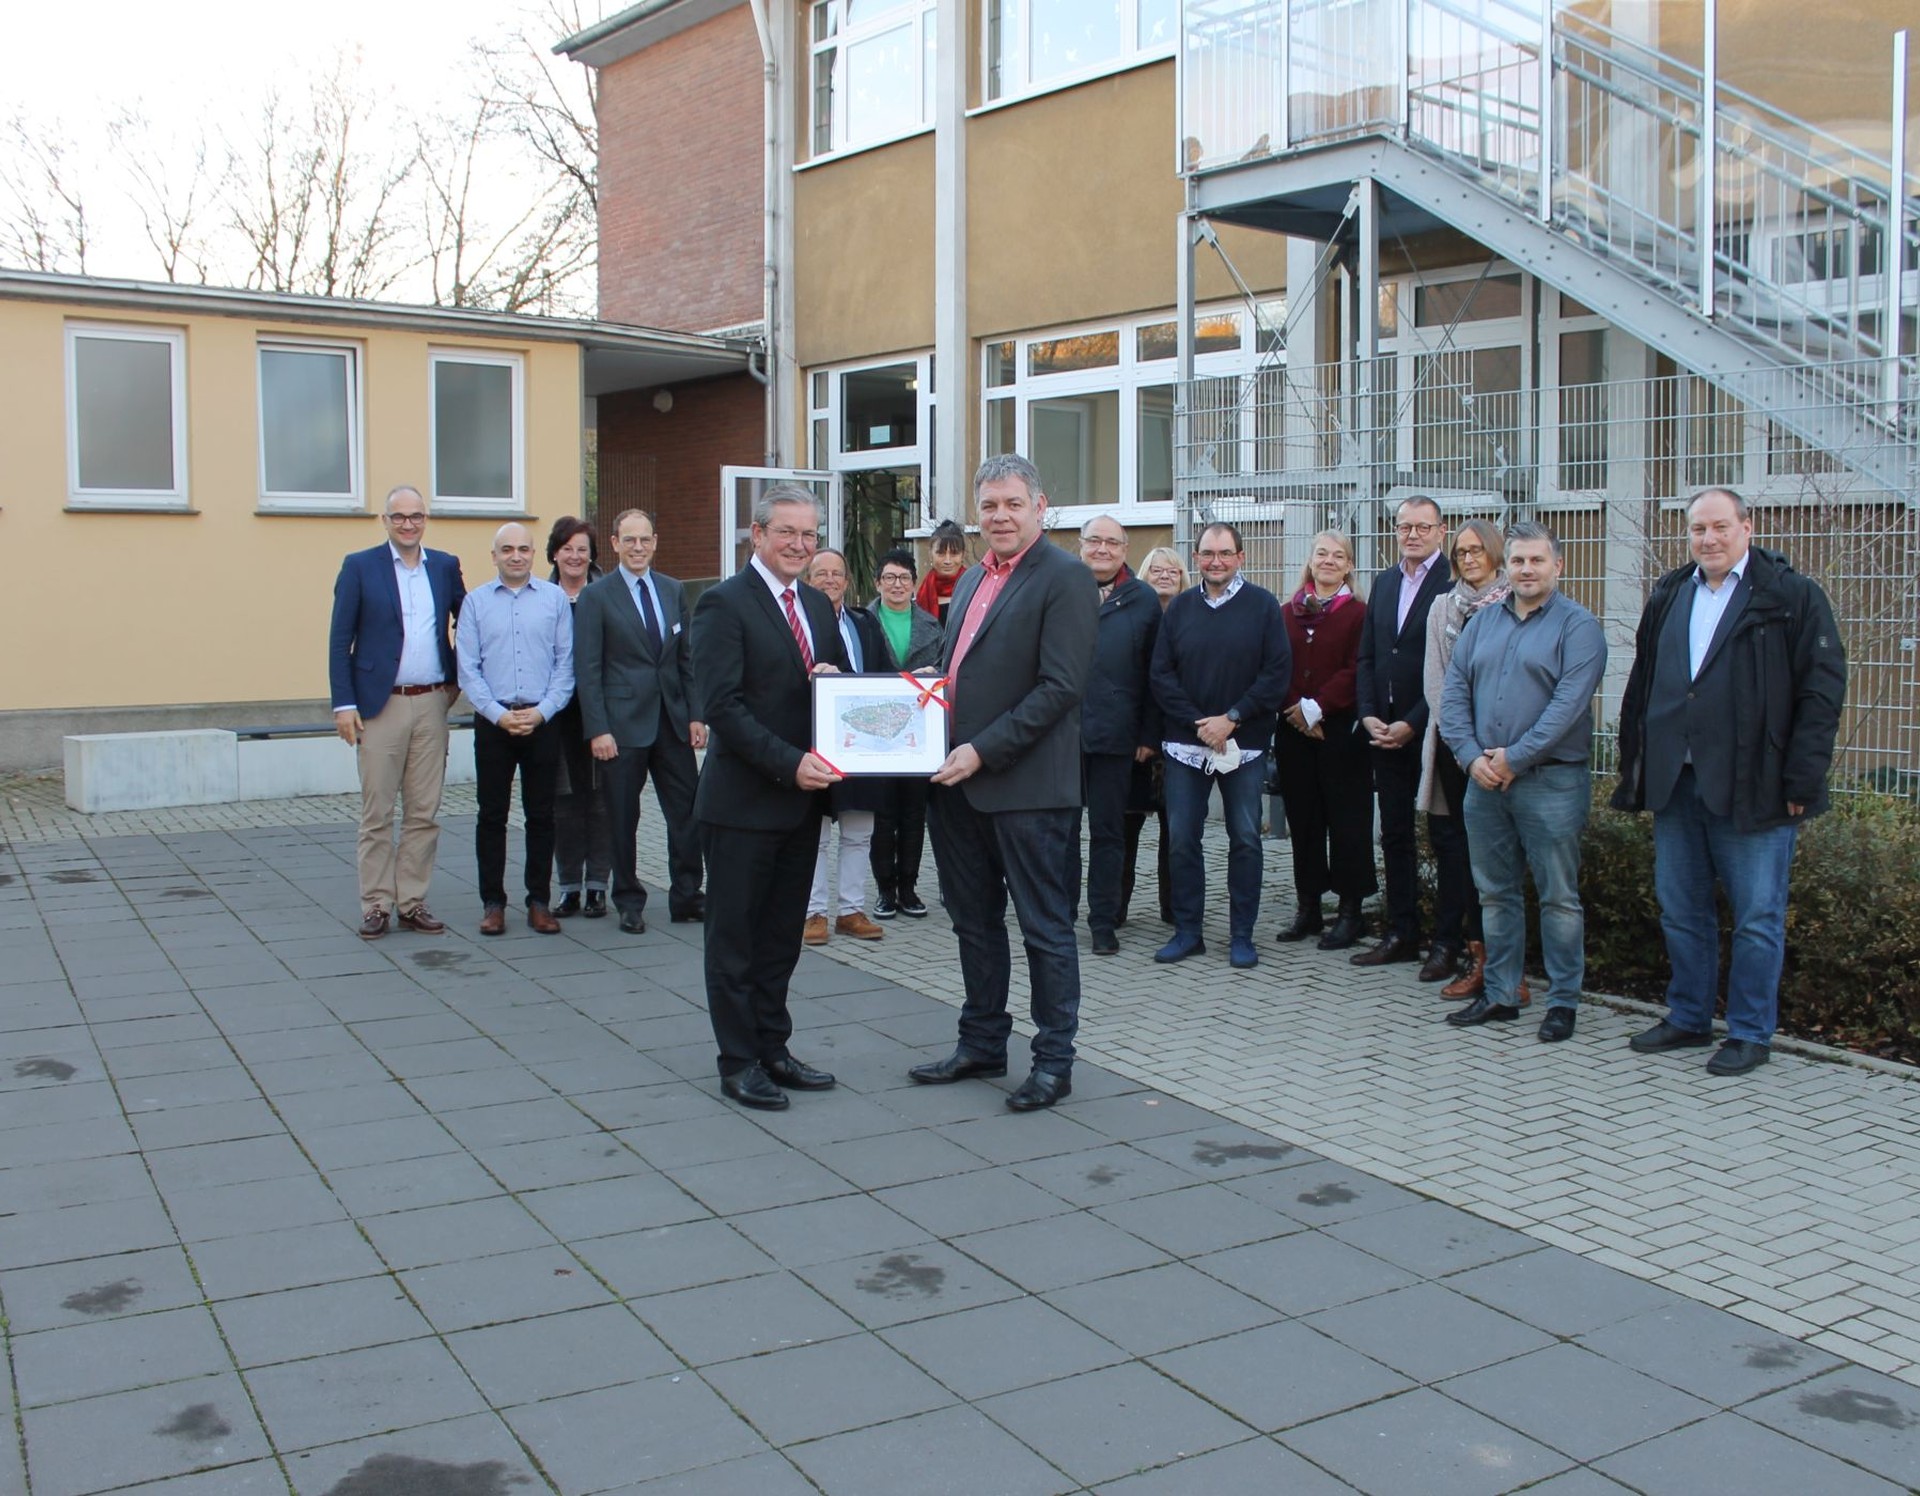 Bürgermeister Michael Dreier überreicht für die neuen Räume Schulleiter Christian Bohle ein Bild des bekannten Paderborner Künstlers Herman Reichold.